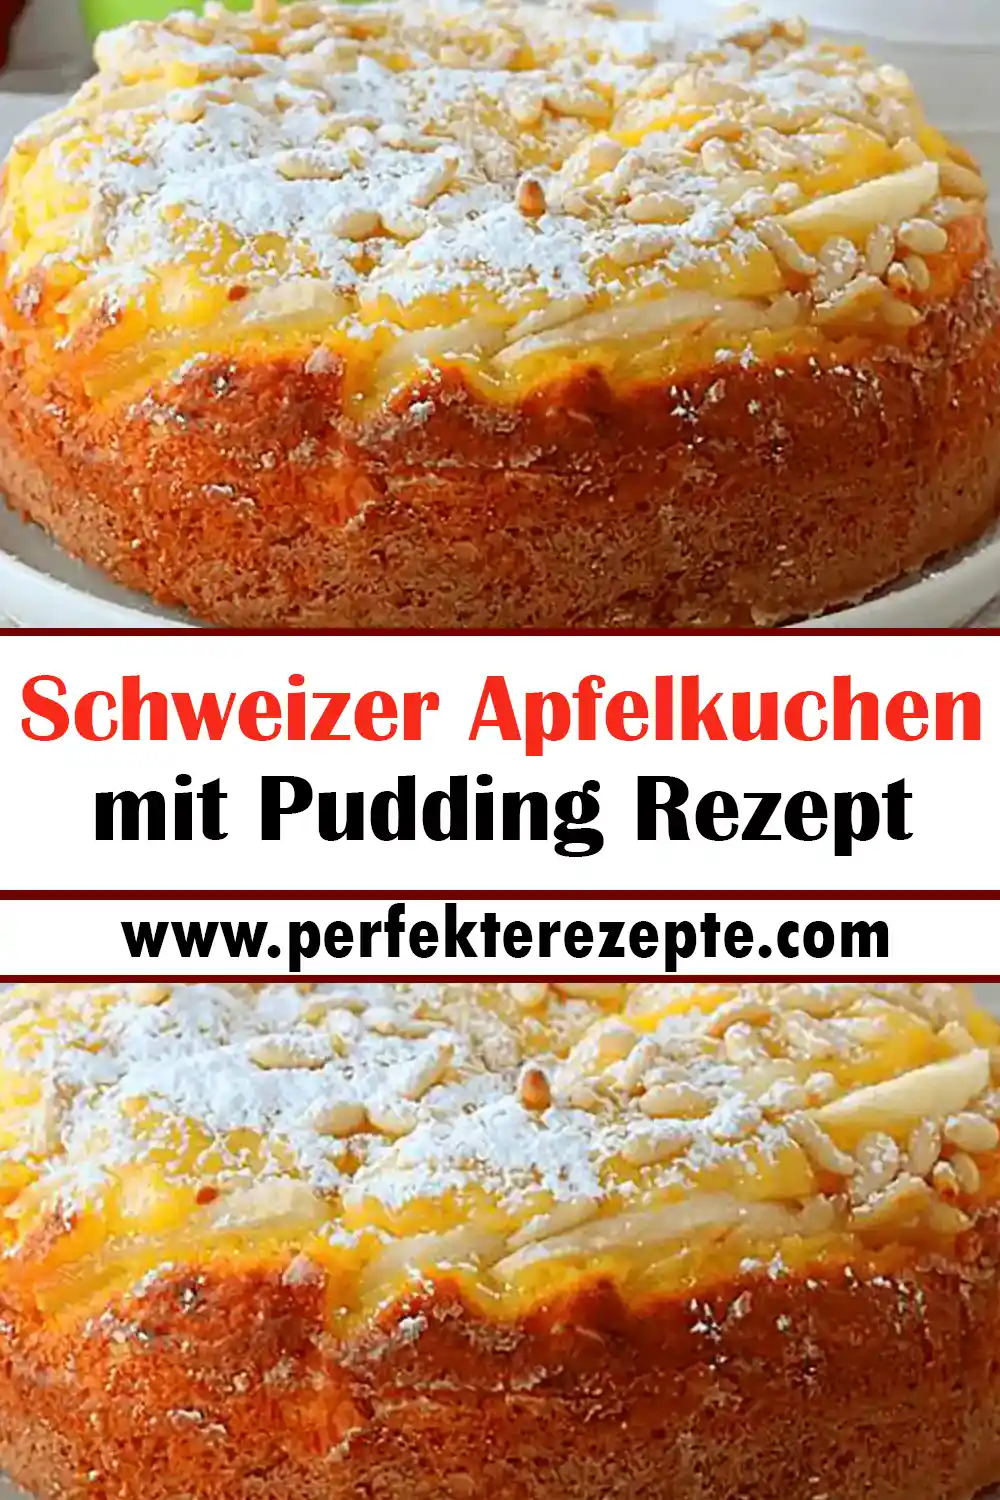 Schweizer Apfelkuchen mit Pudding Rezept